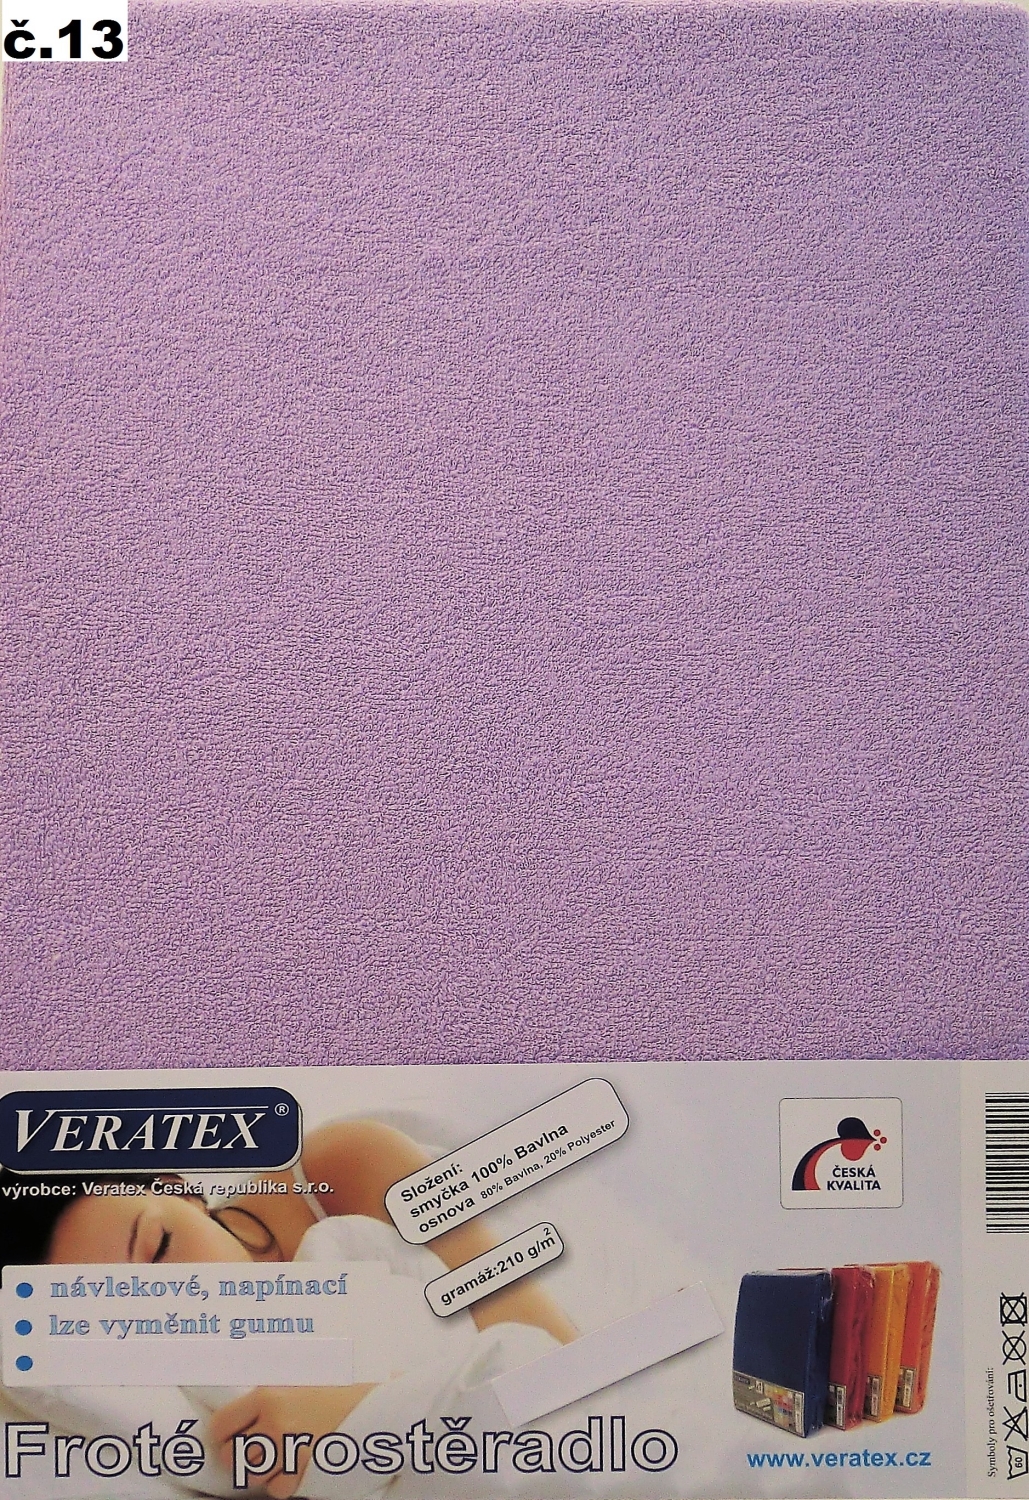 Veratex Froté prostěradlo 200x200 cm (č.13-fialková)